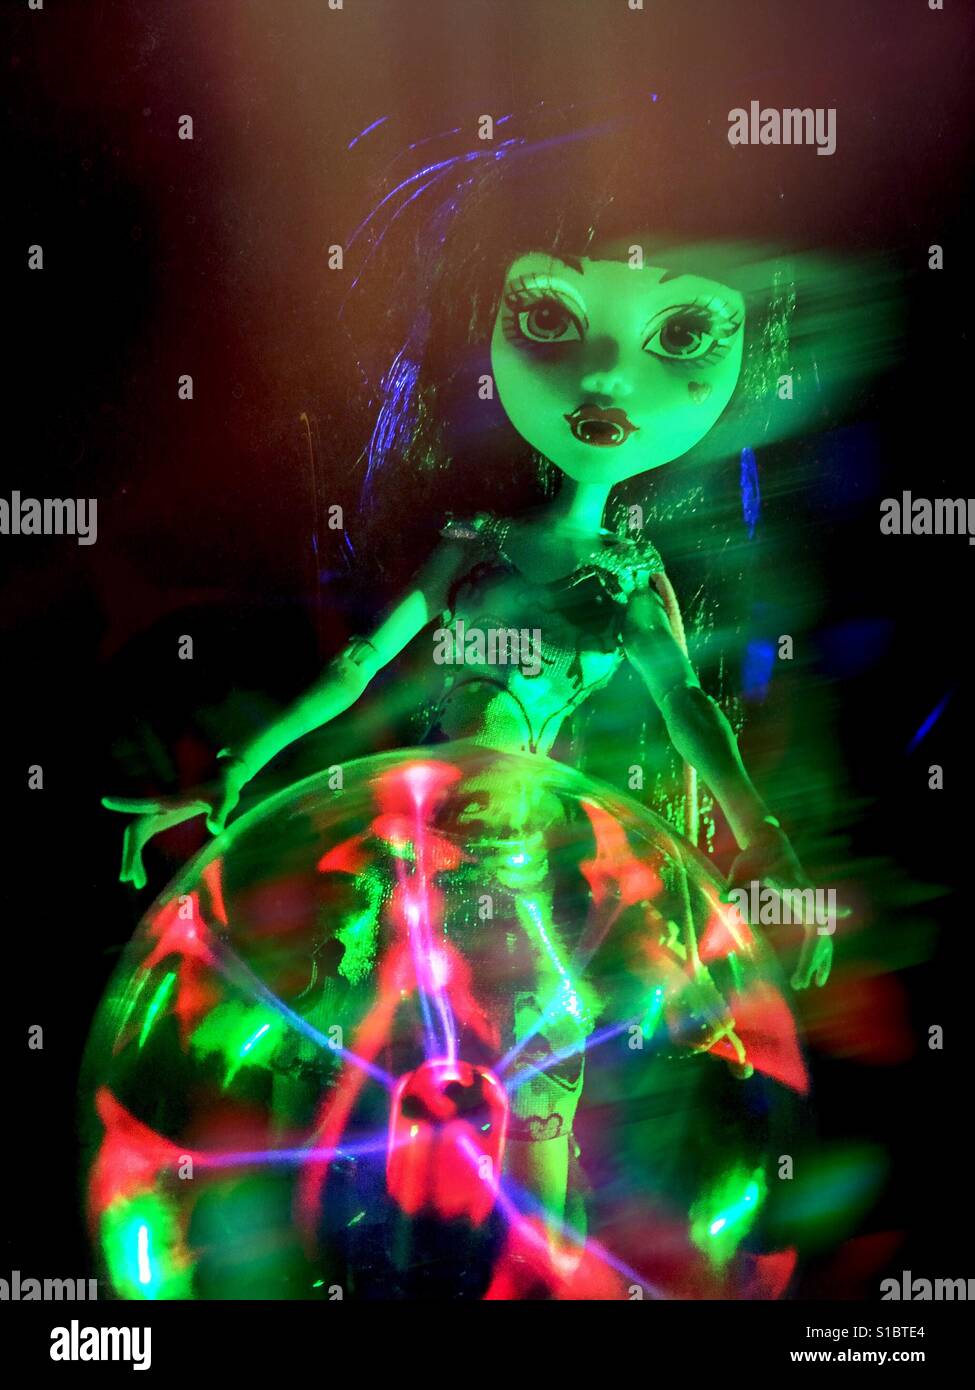 Eine Monster High Puppe mit gotischen Make-up steht hinter eine glühende Plasma-Kugel mit geisterhaften Effekt. Stockfoto